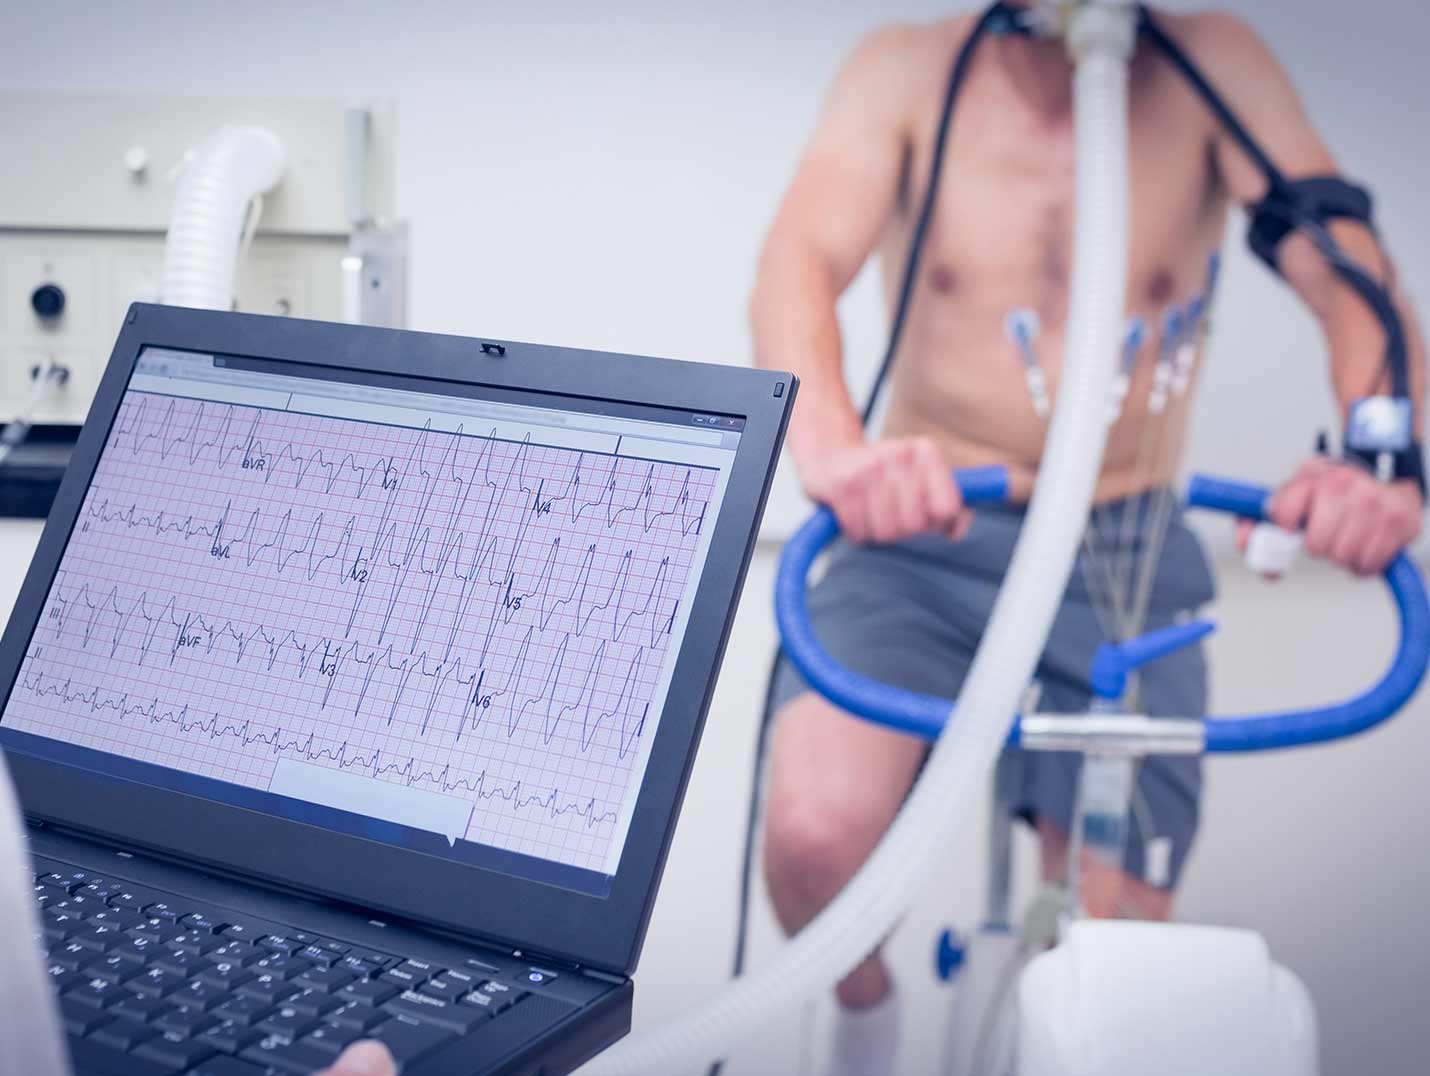 Paciente pedalenado y conectado a una bicicleta electrica mientras un doctor monitorea su frecuencia cardiaca en una pantalla.